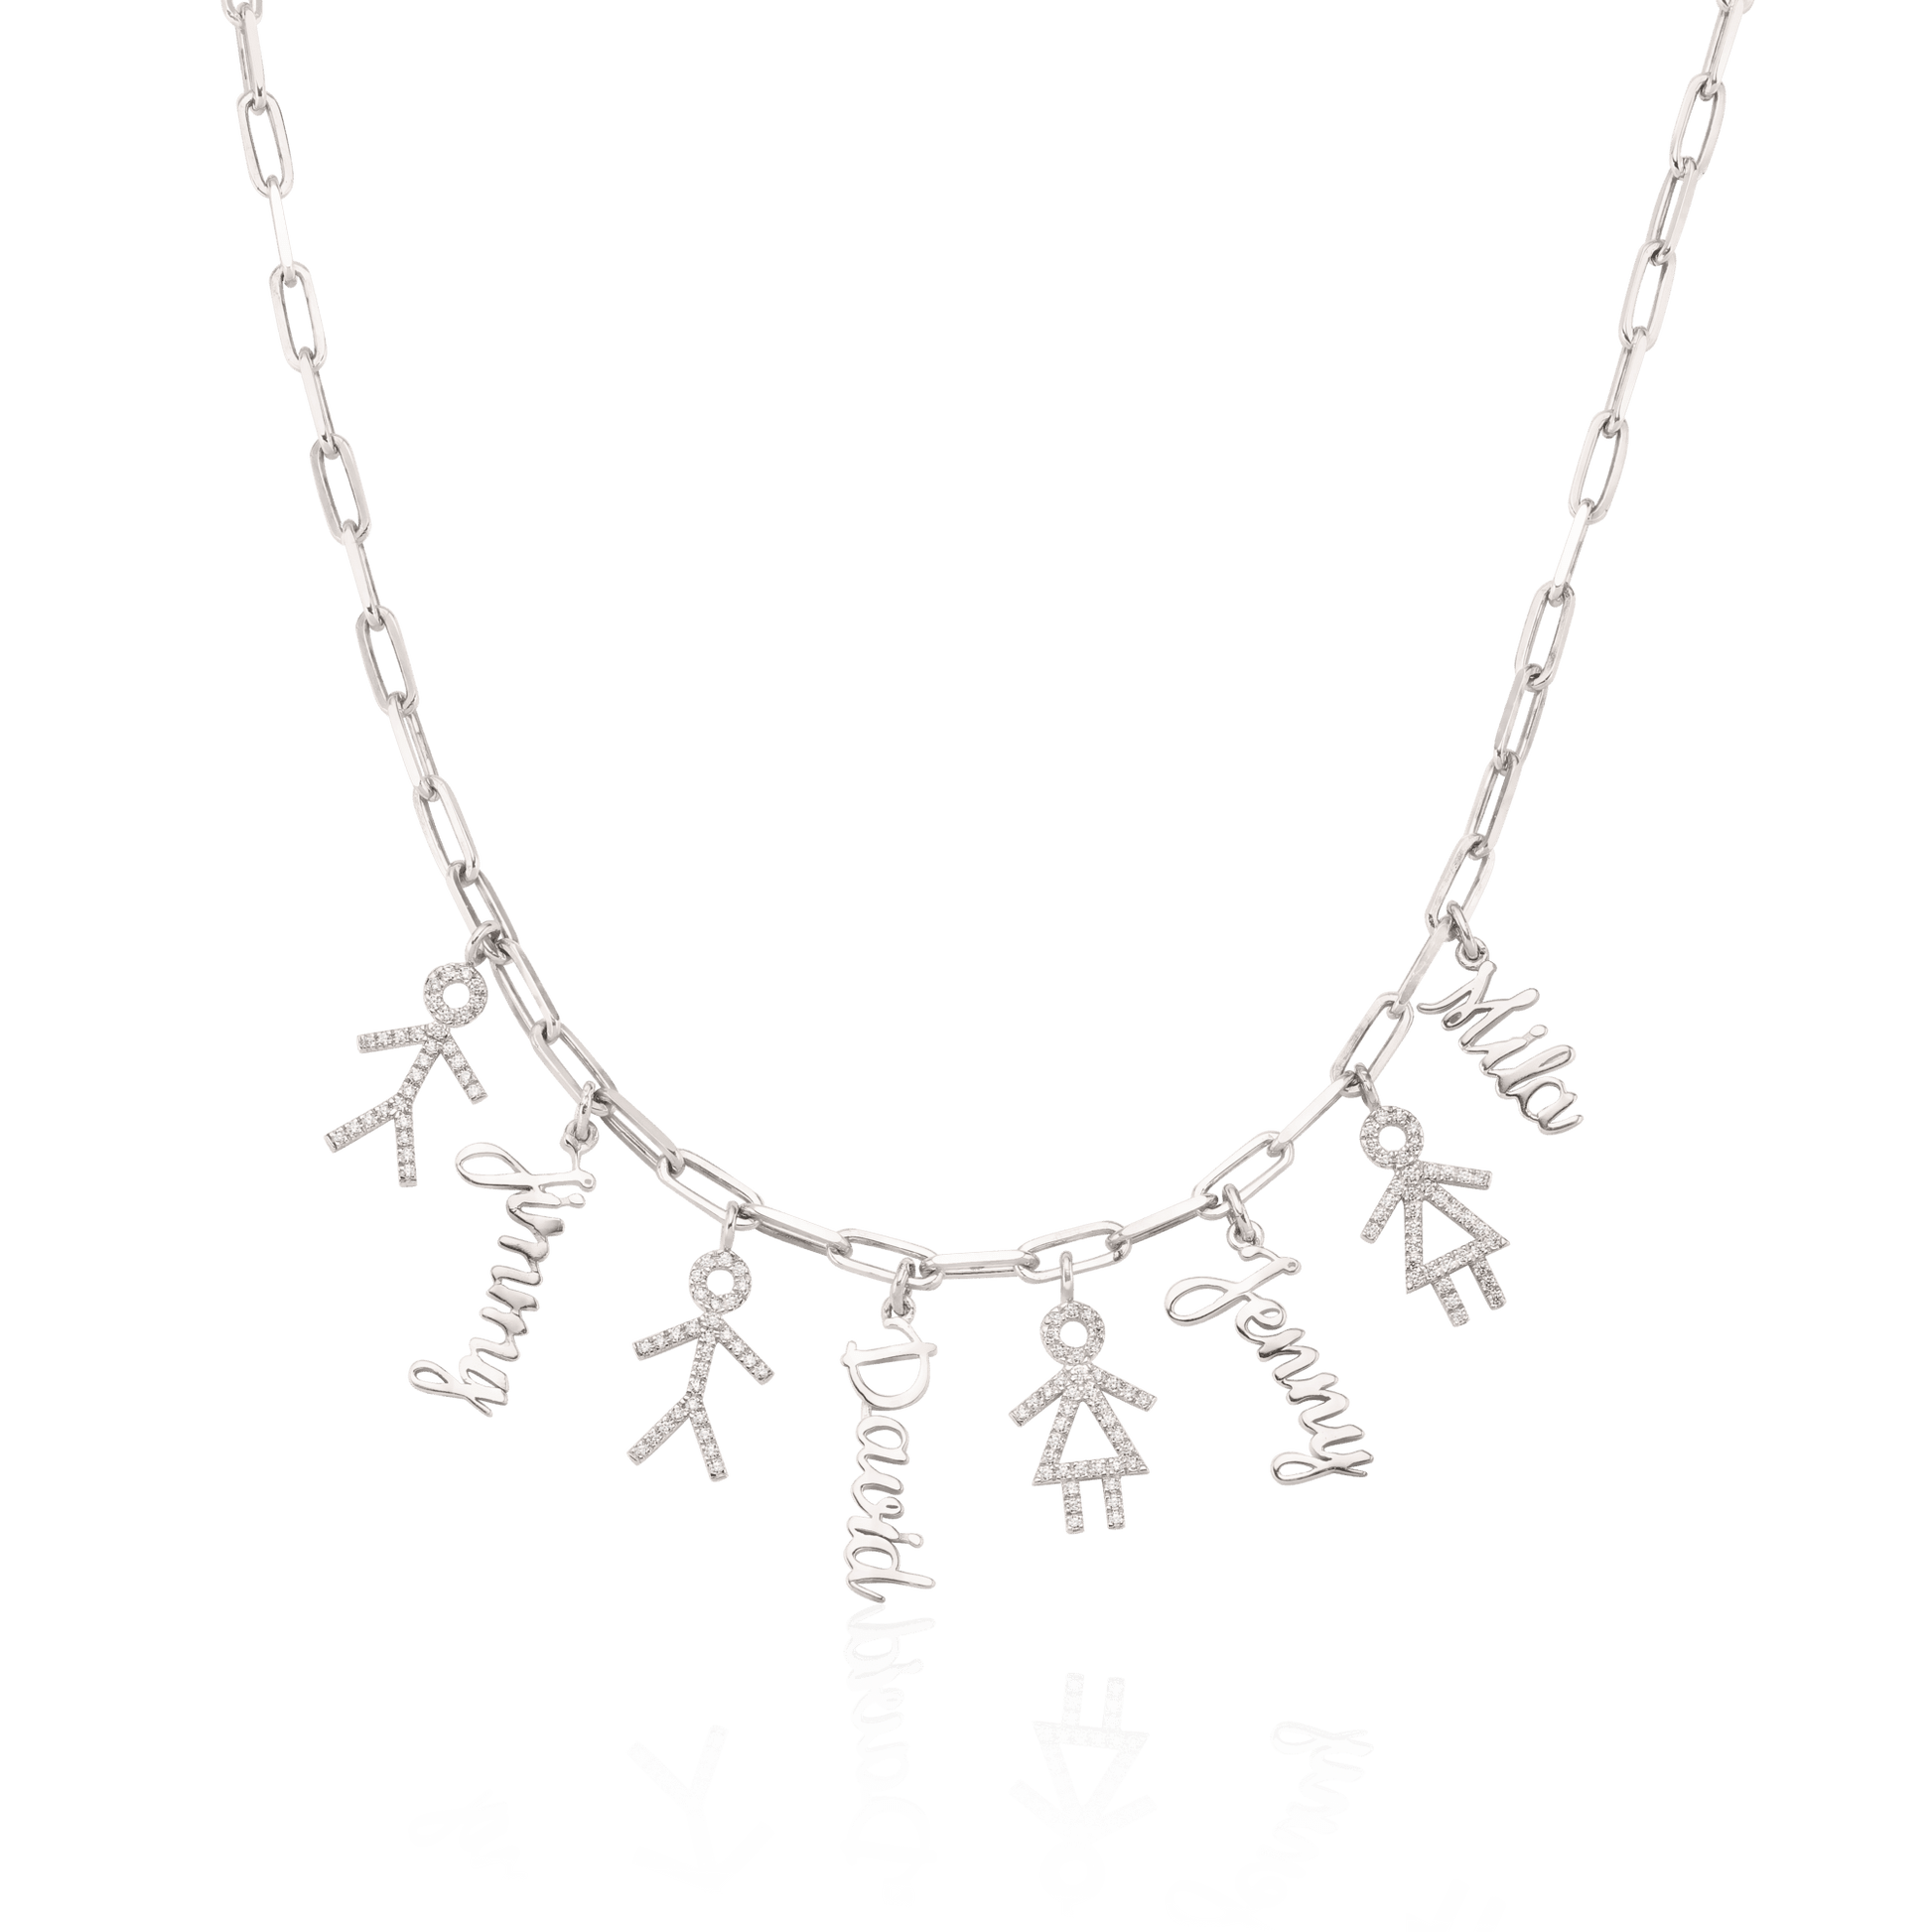 Kith & Kin Necklace - 18K Rose Vermeil Necklaces Gold Vermeil 